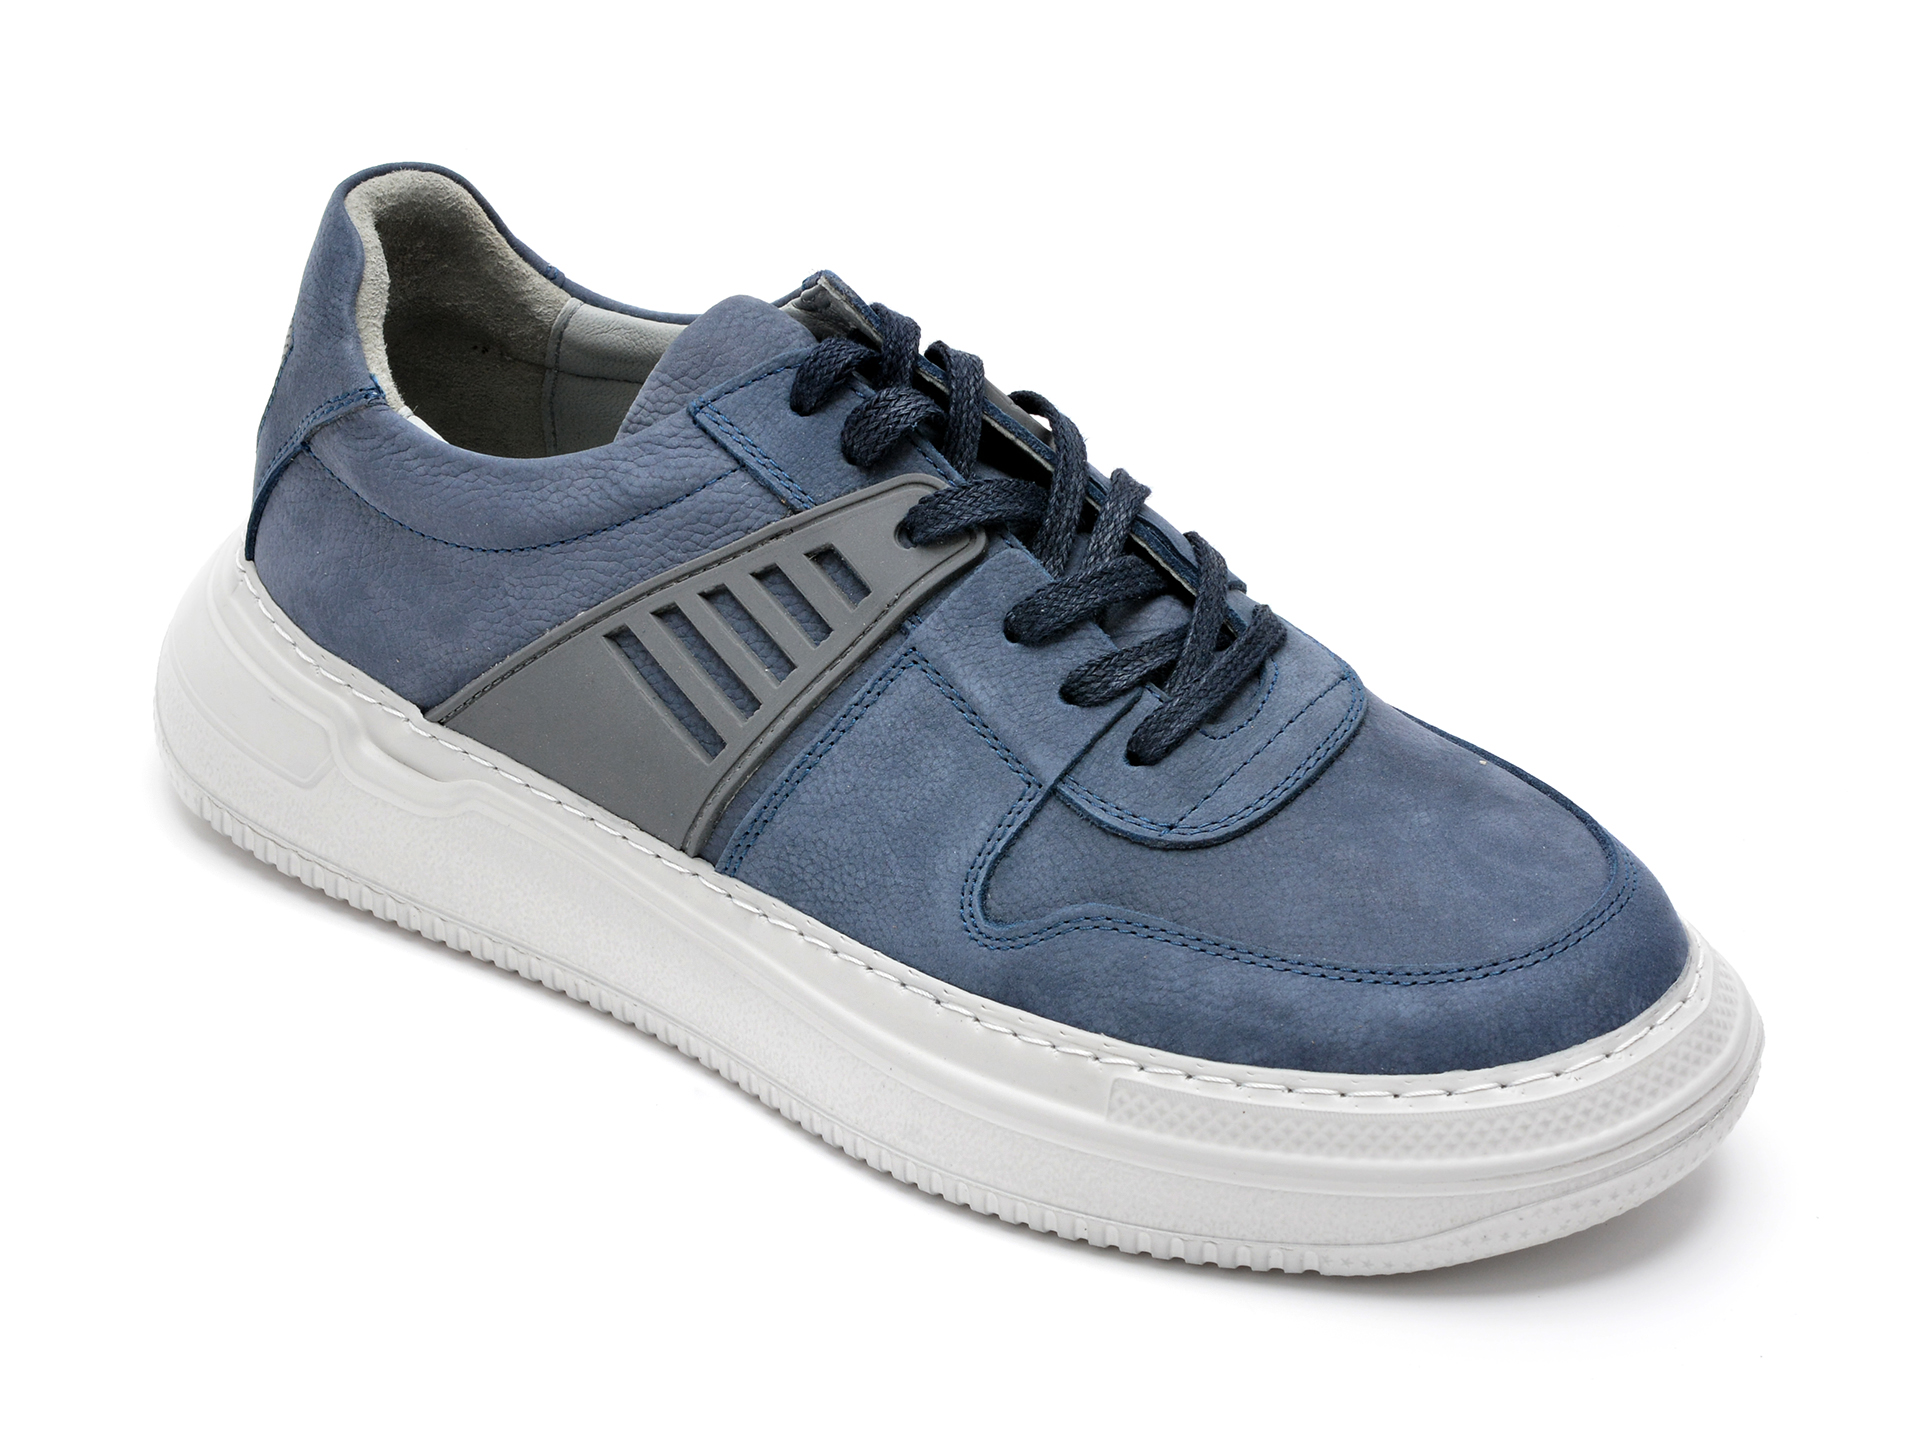 Pantofi OTTER albastri, 13103, din nabuc 2023 ❤️ Pret Super Black Friday otter.ro imagine noua 2022